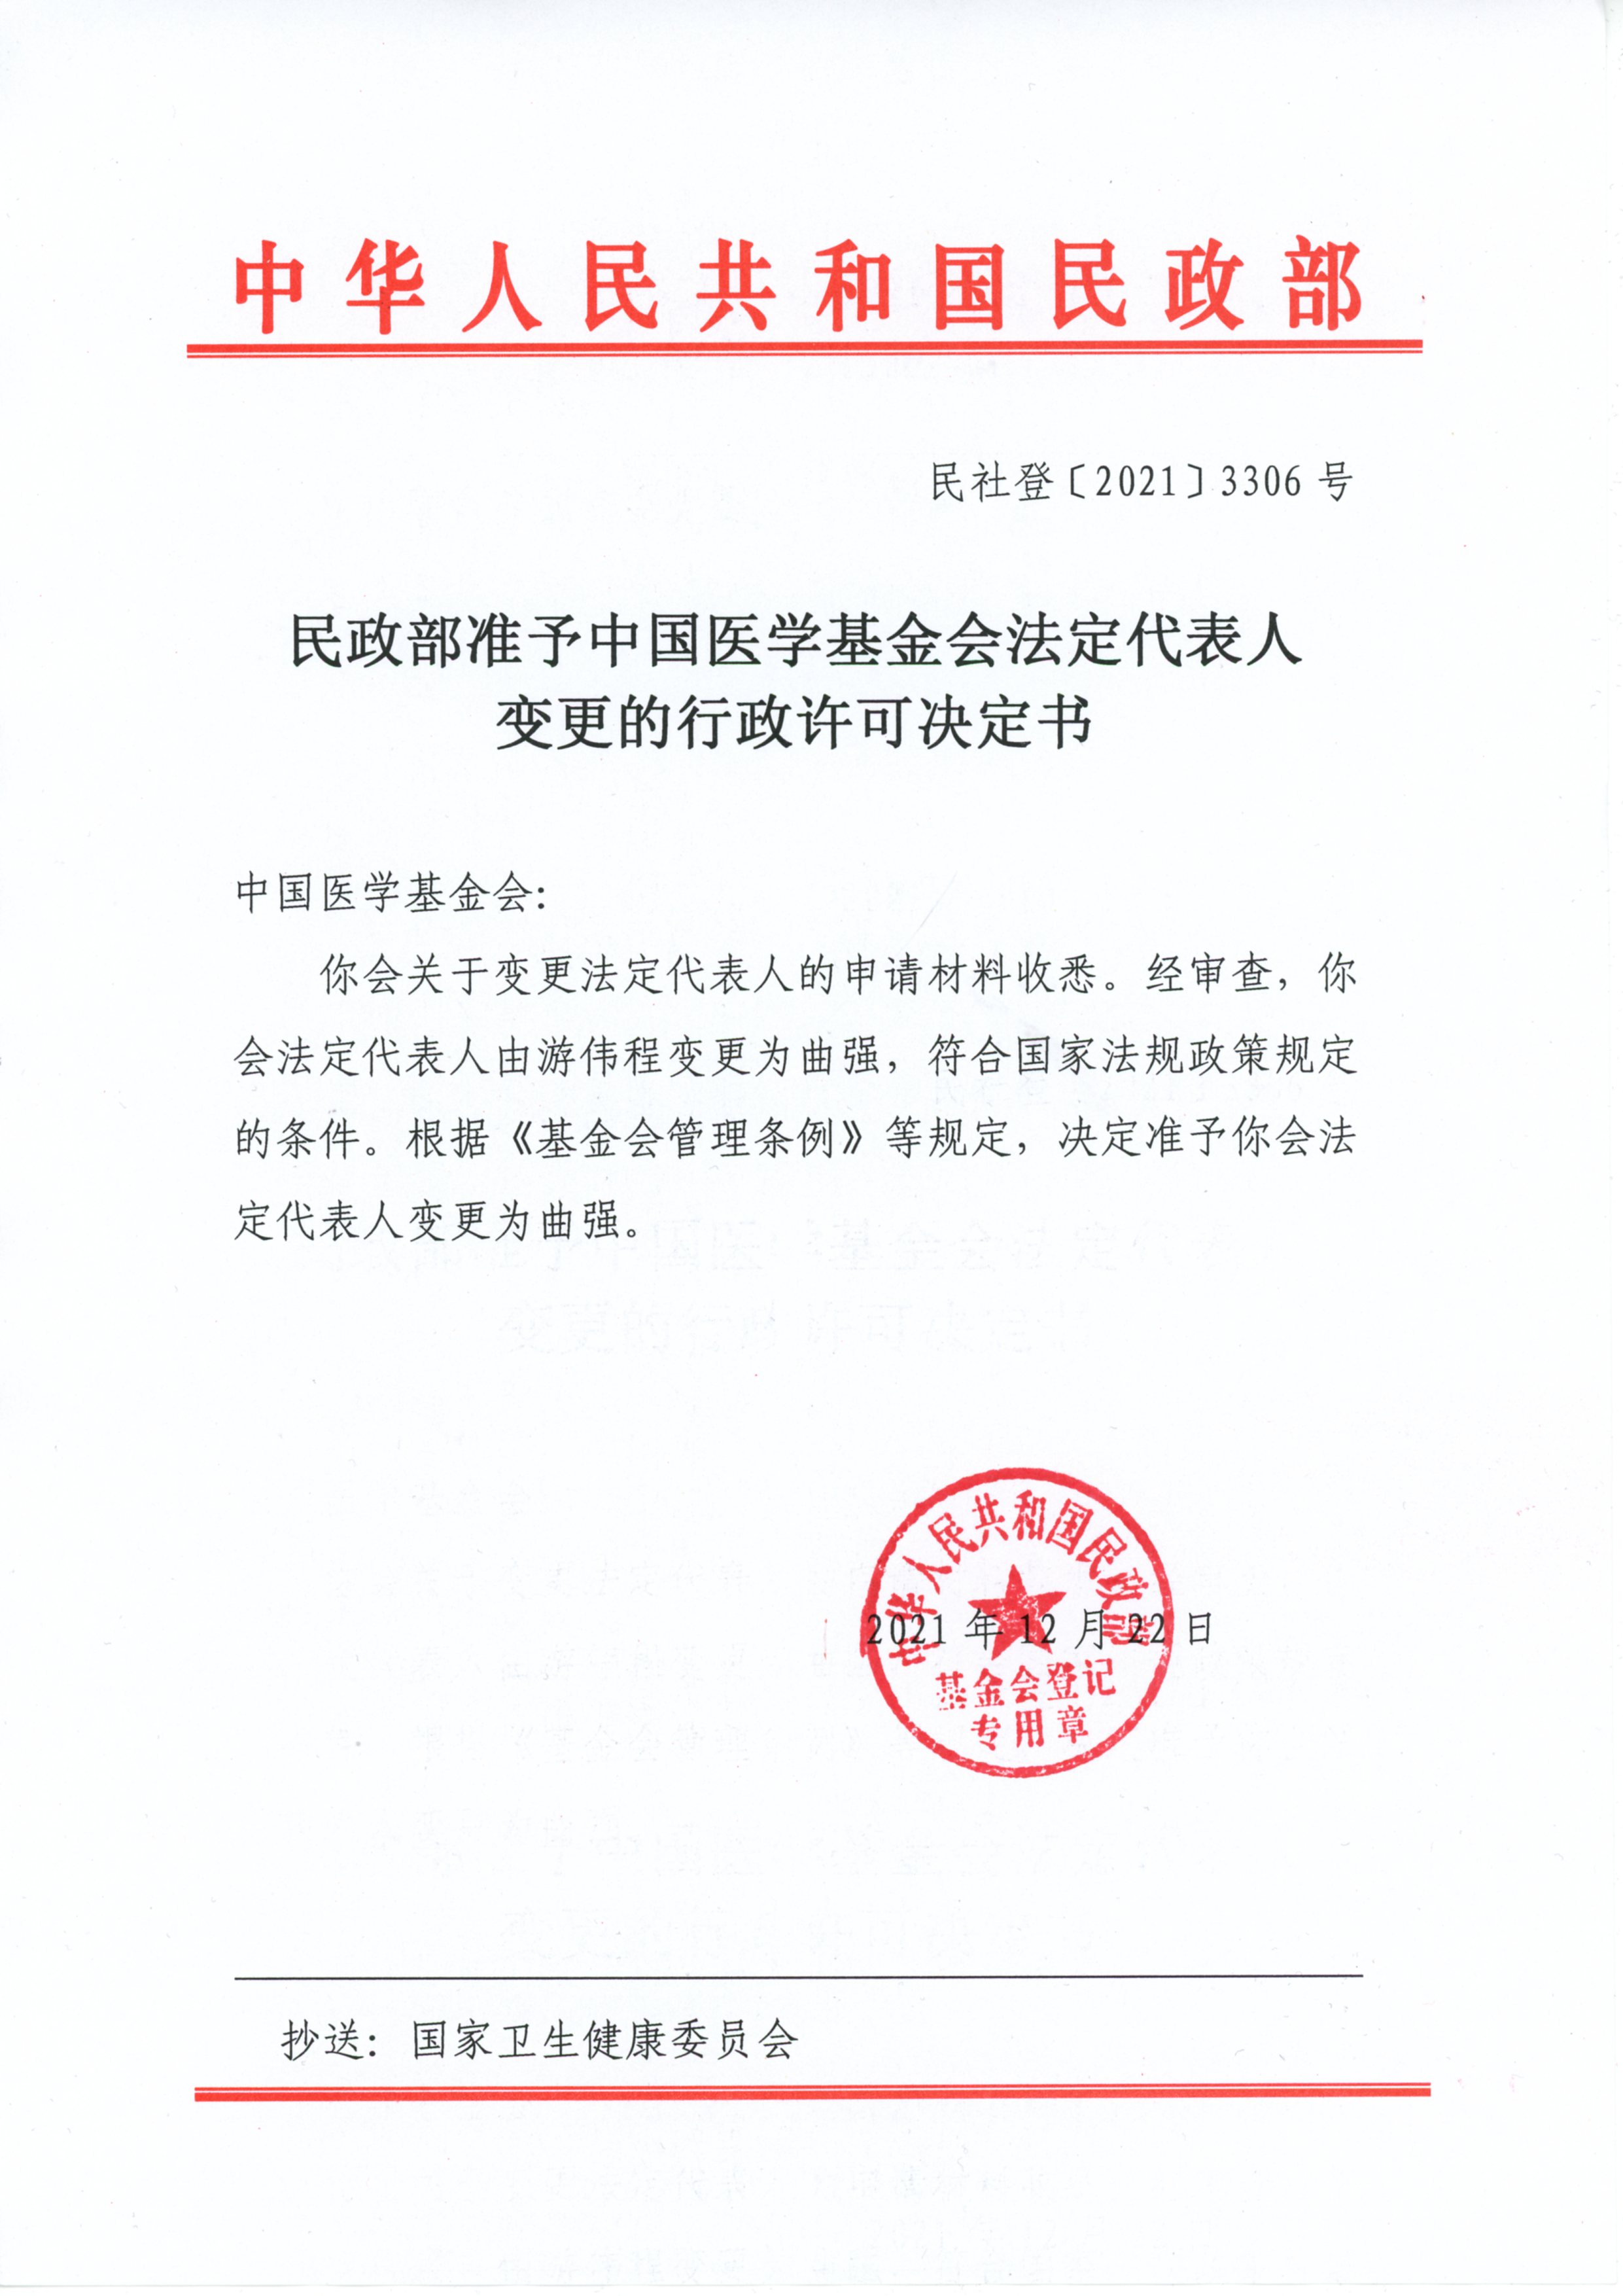 6、2022.02.21民政部准予中国医学基金会法定代表人变更的行政许可决定书（2021.12.22）（新闻中心：工作动态）.jpg